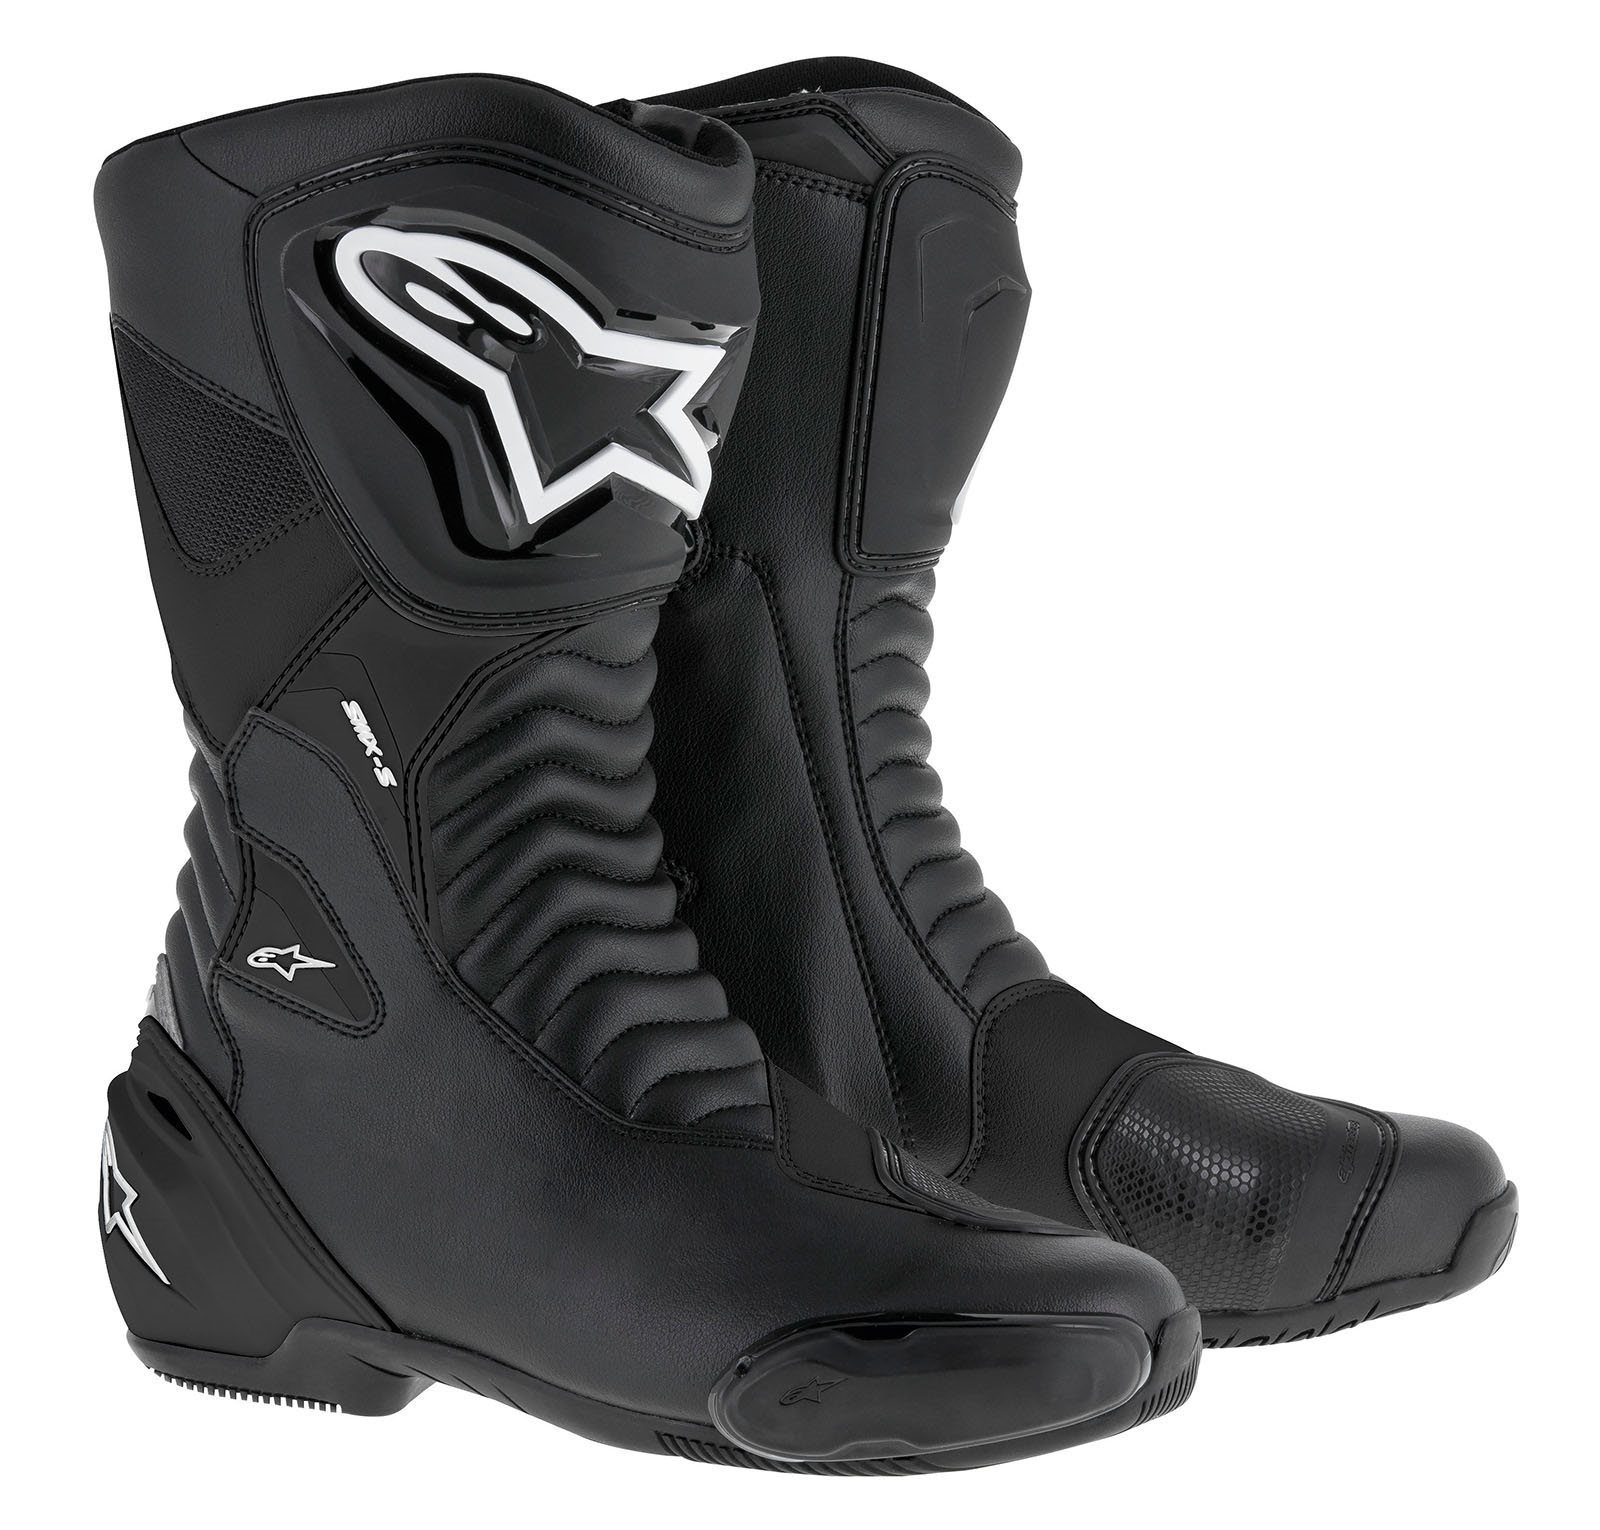 Cizme moto piele alpinestars sportracing stiefel s-mx s special edition culoare negru marime 37